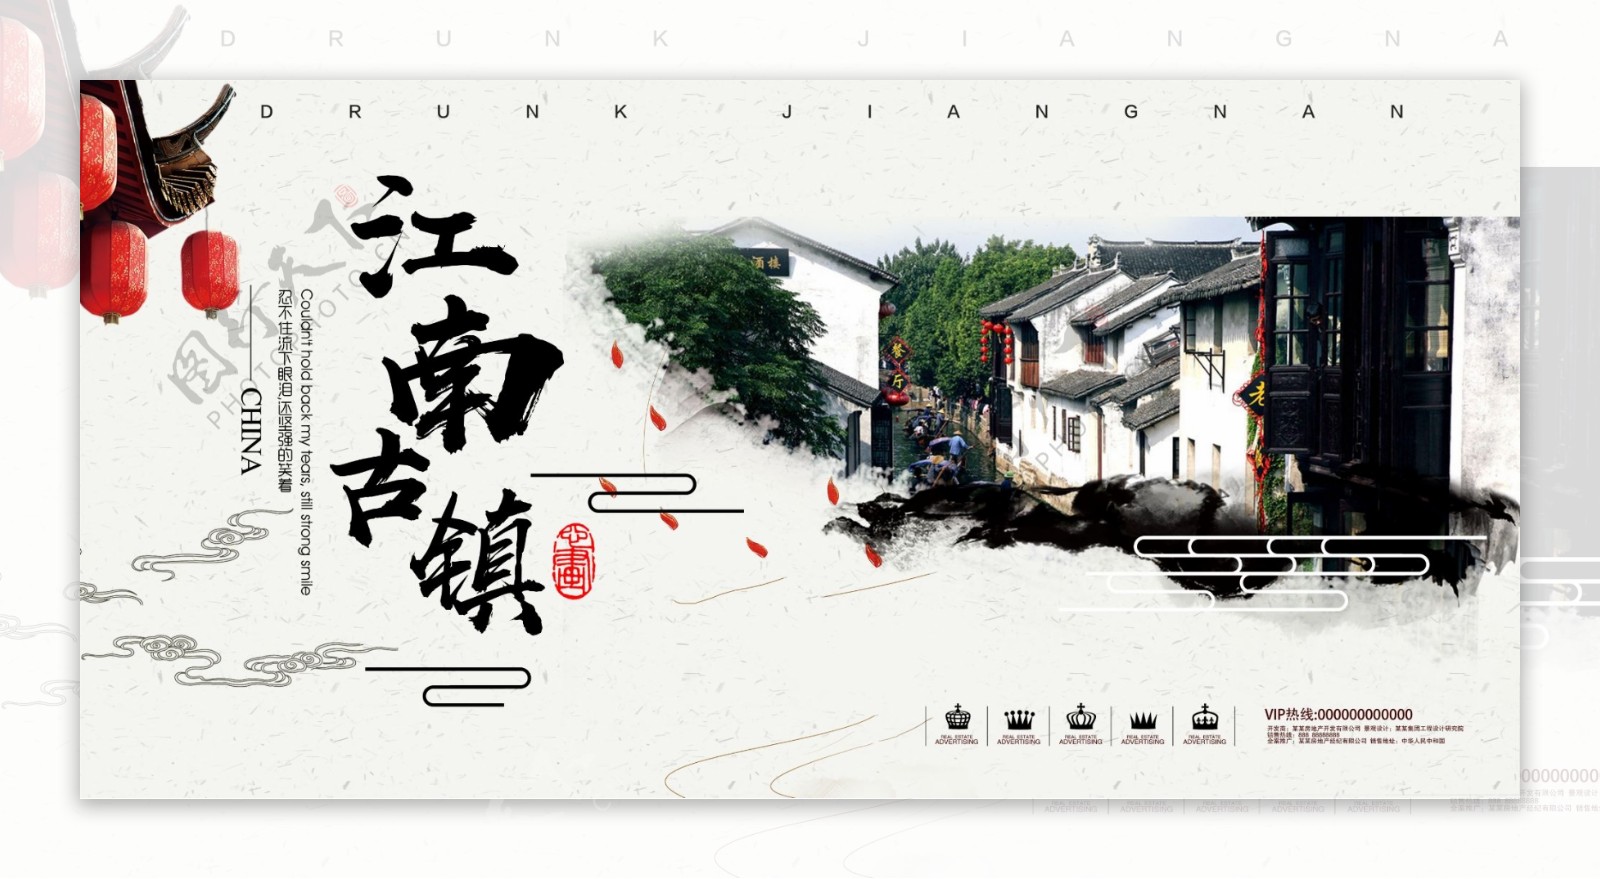 江南古镇旅行社旅游宣传海报设计